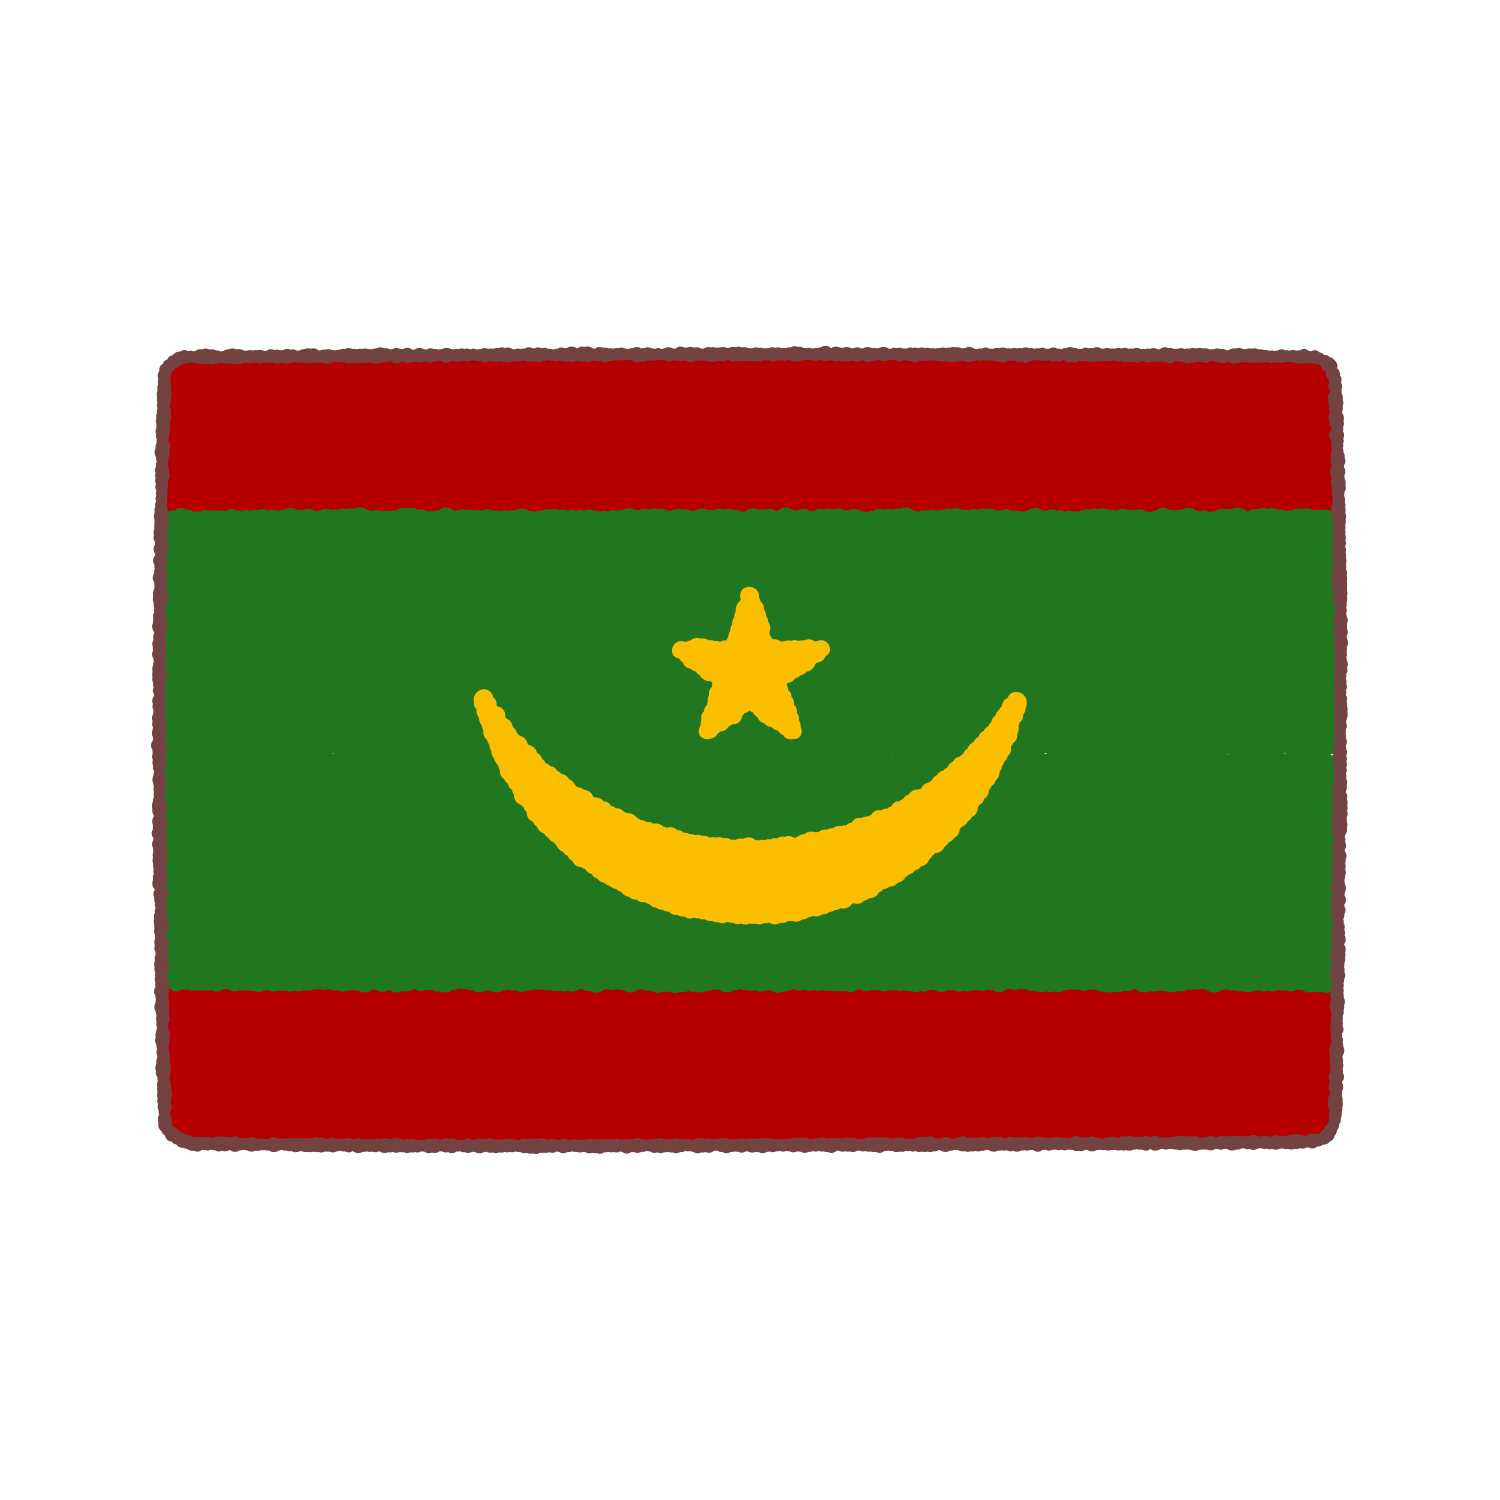 モーリタニア国旗のイラスト